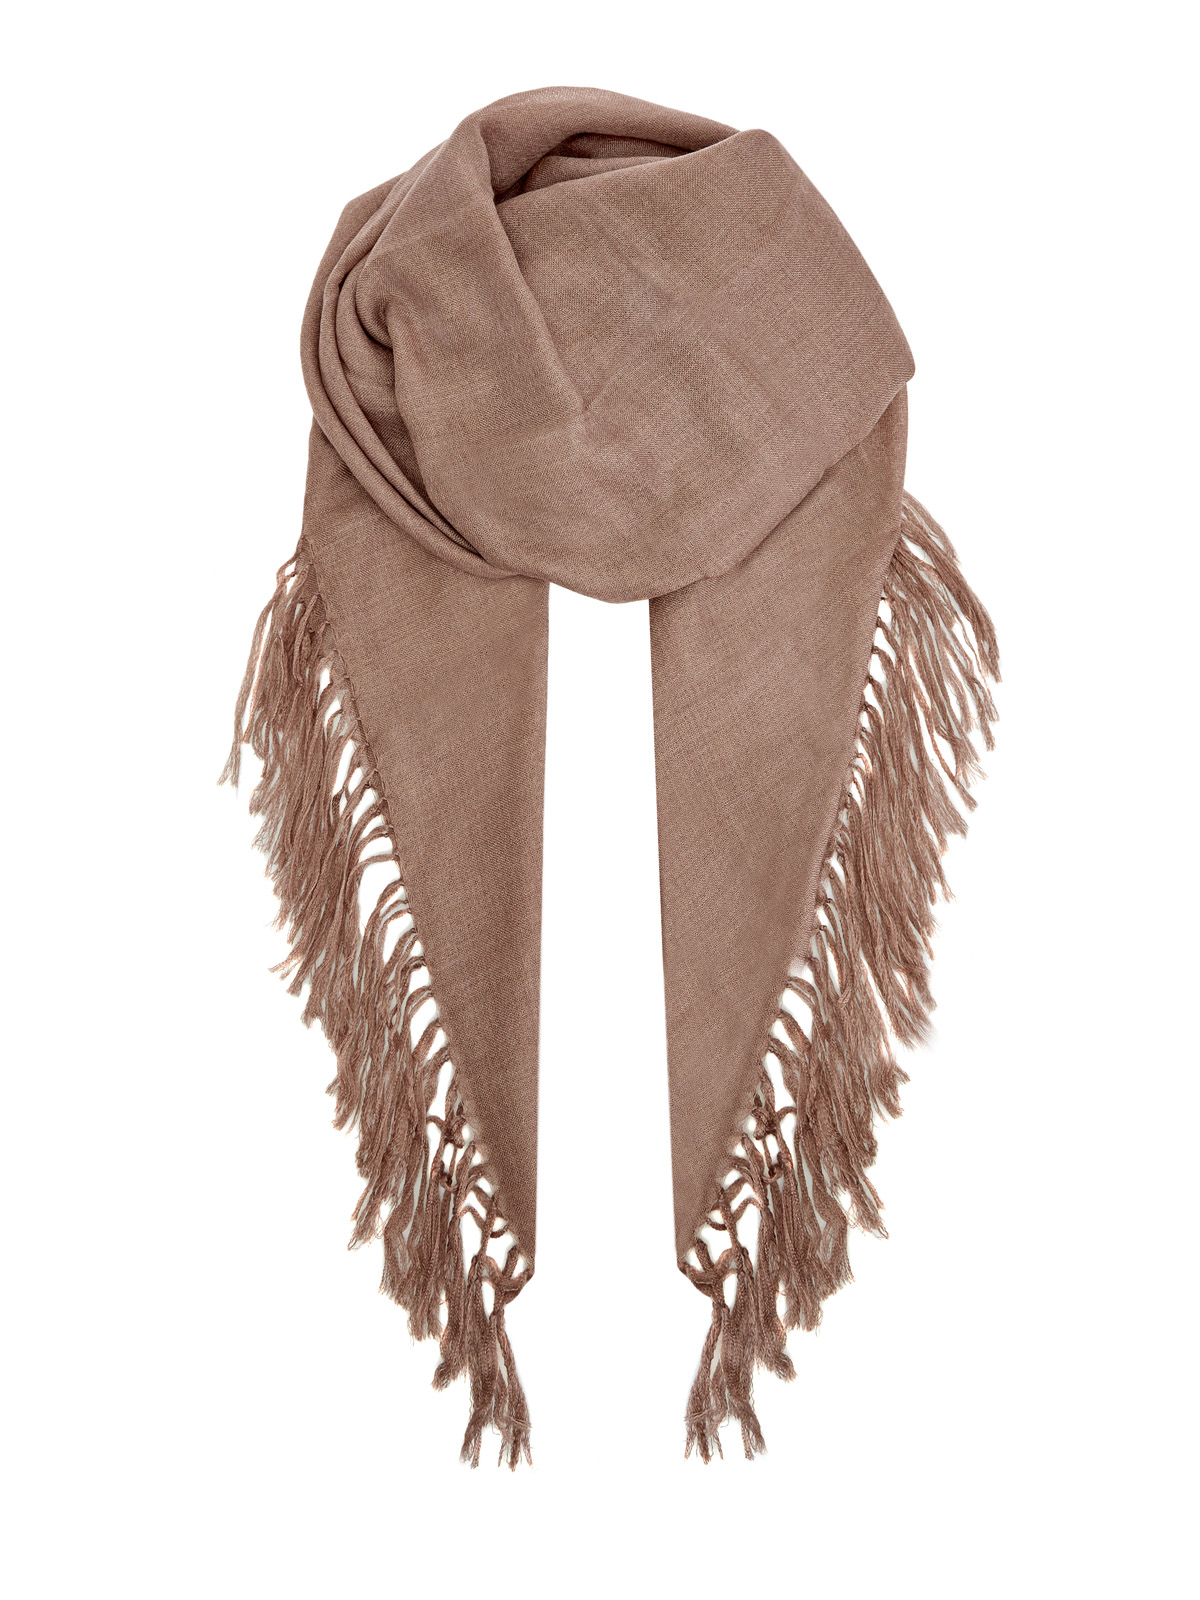 Элегантный шарф из тонкого кашемира и шелка Diamante BRUNELLO CUCINELLI, цвет коричневый, размер M;L